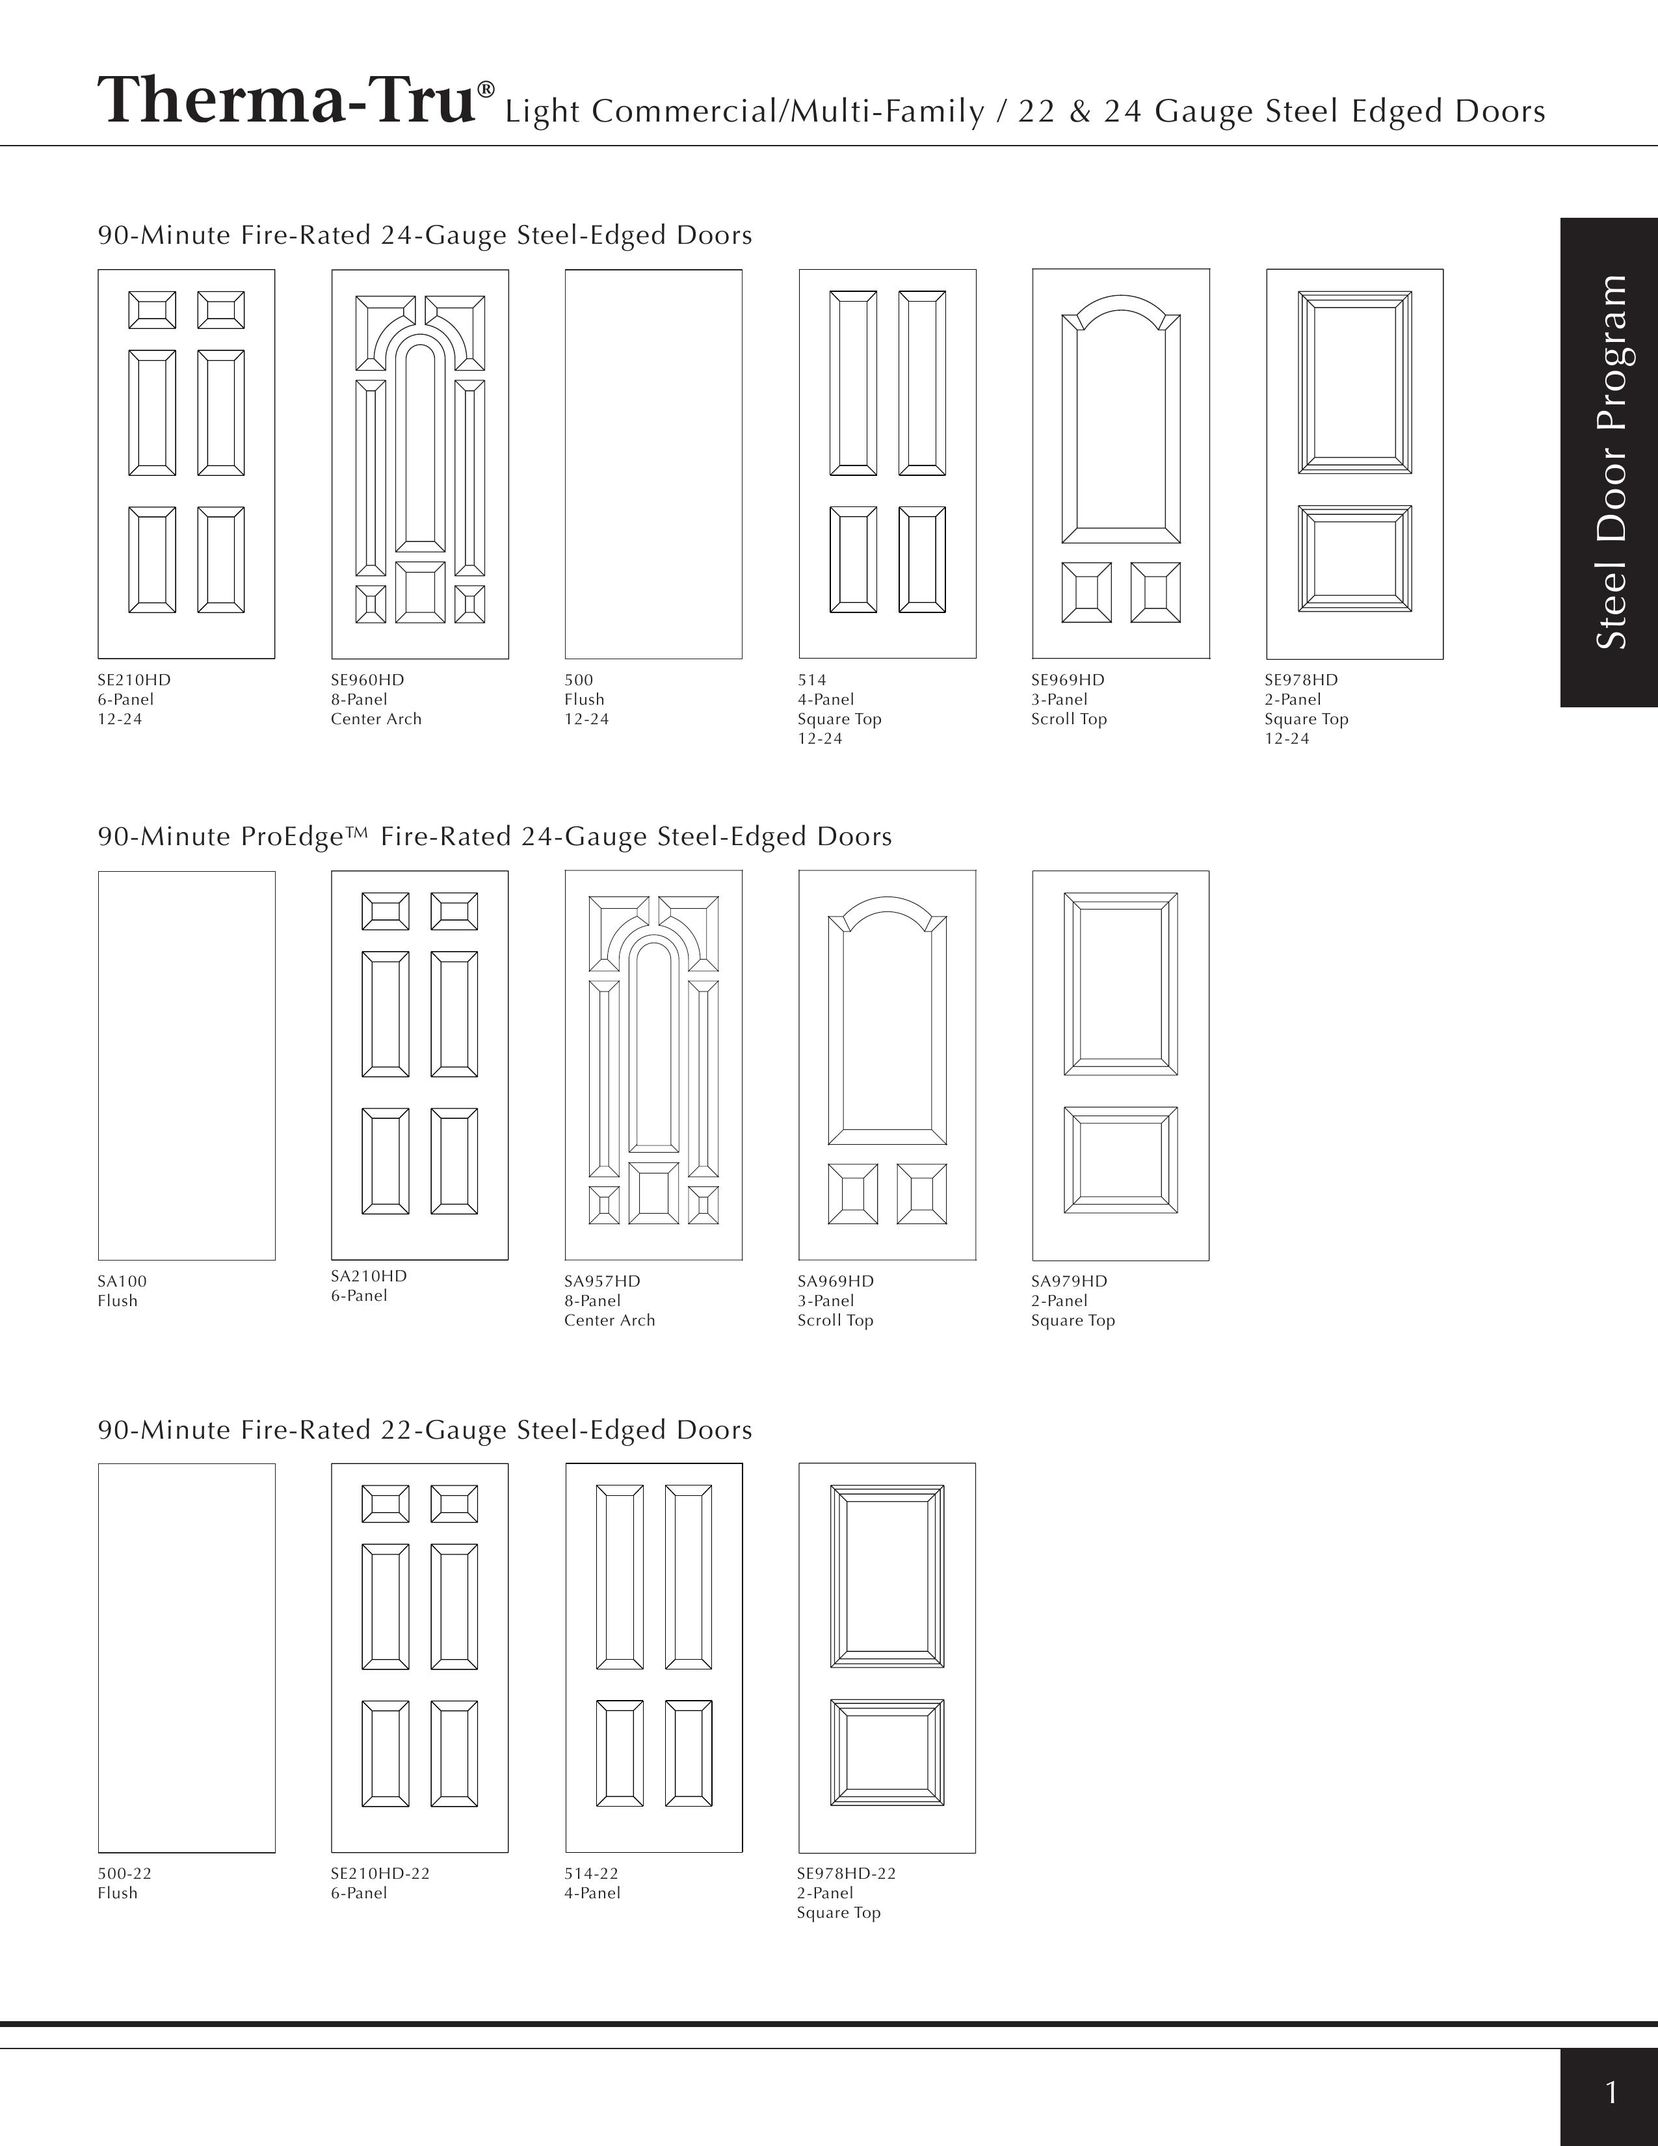 Therma-Tru Light Commercial/Multi-Family / 22 & 24 Gauge Steel Edged Door Door User Manual